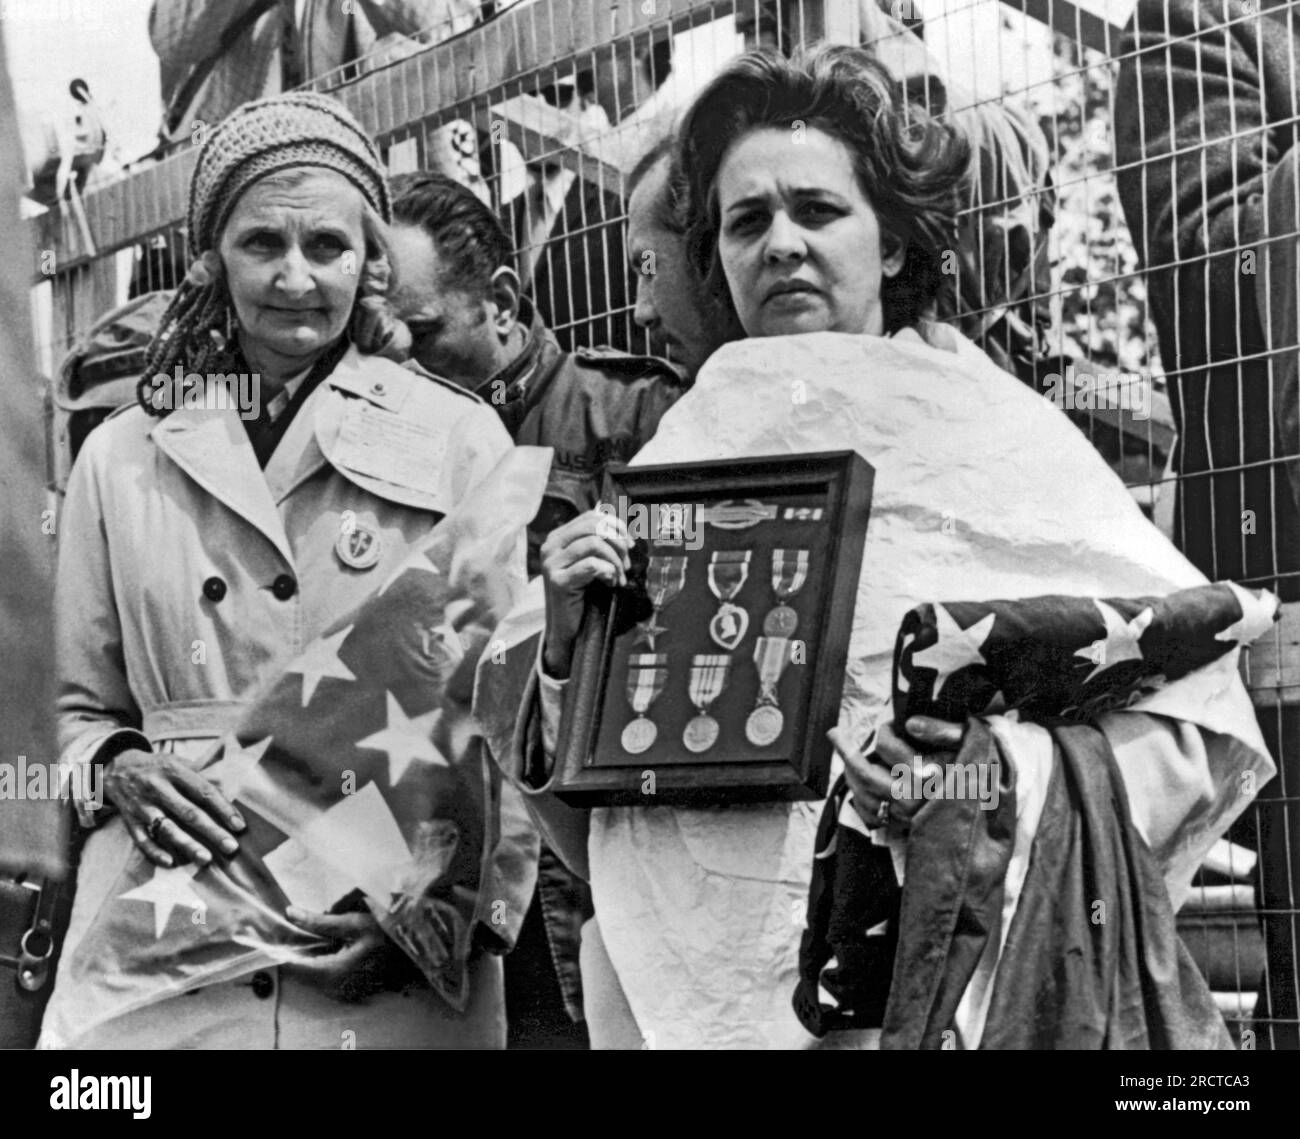 Washington, D.C.: 23 aprile 1971 due madri Gold Star detengono medaglie e bandiere dei loro figli morti in una protesta contro la guerra del Vietnam nei pressi del Campidoglio di oggi. Sono Anna Pine (L) di Trenton, New Jersey, e Evelyn Carrasquillo di Miami, Florida. Fred Pine e Alberto Carrasquillo furono uccisi in Vietnam nel 1968. Foto Stock